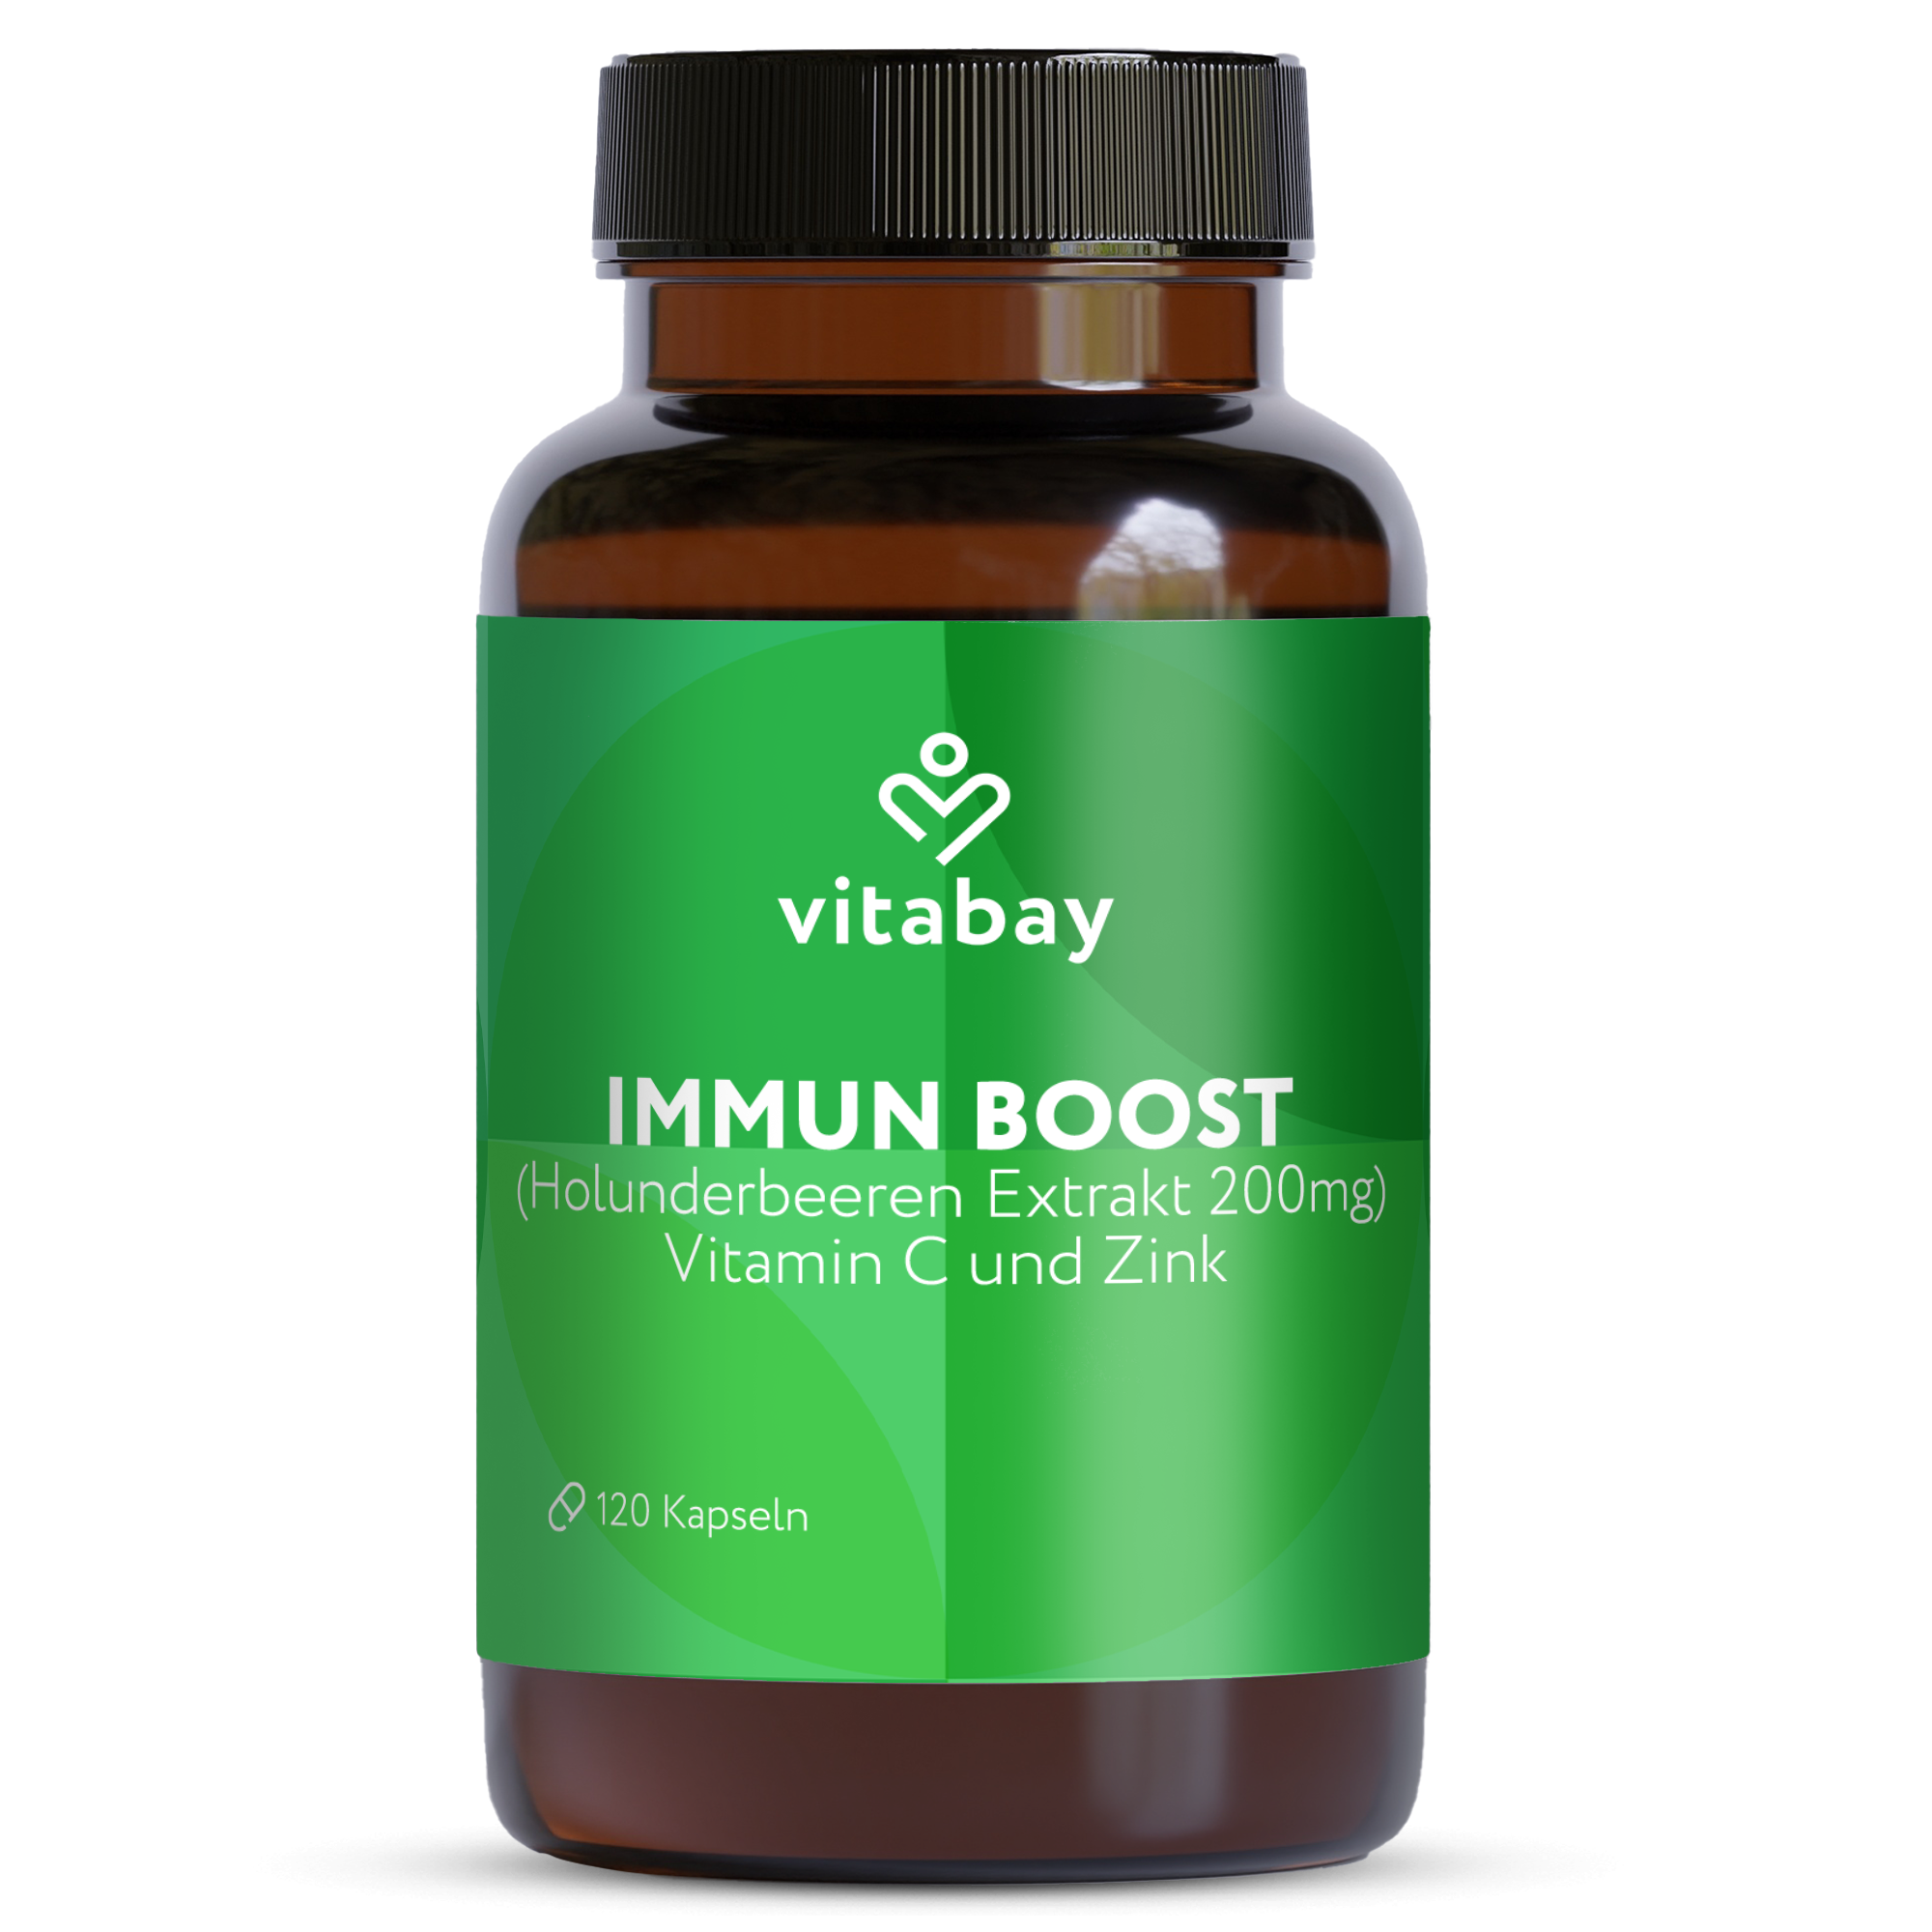 Immun Boost - mit Holunderbeeren Extrakt 200mg, Vitamin C und Zink - 120 vegane Kapseln